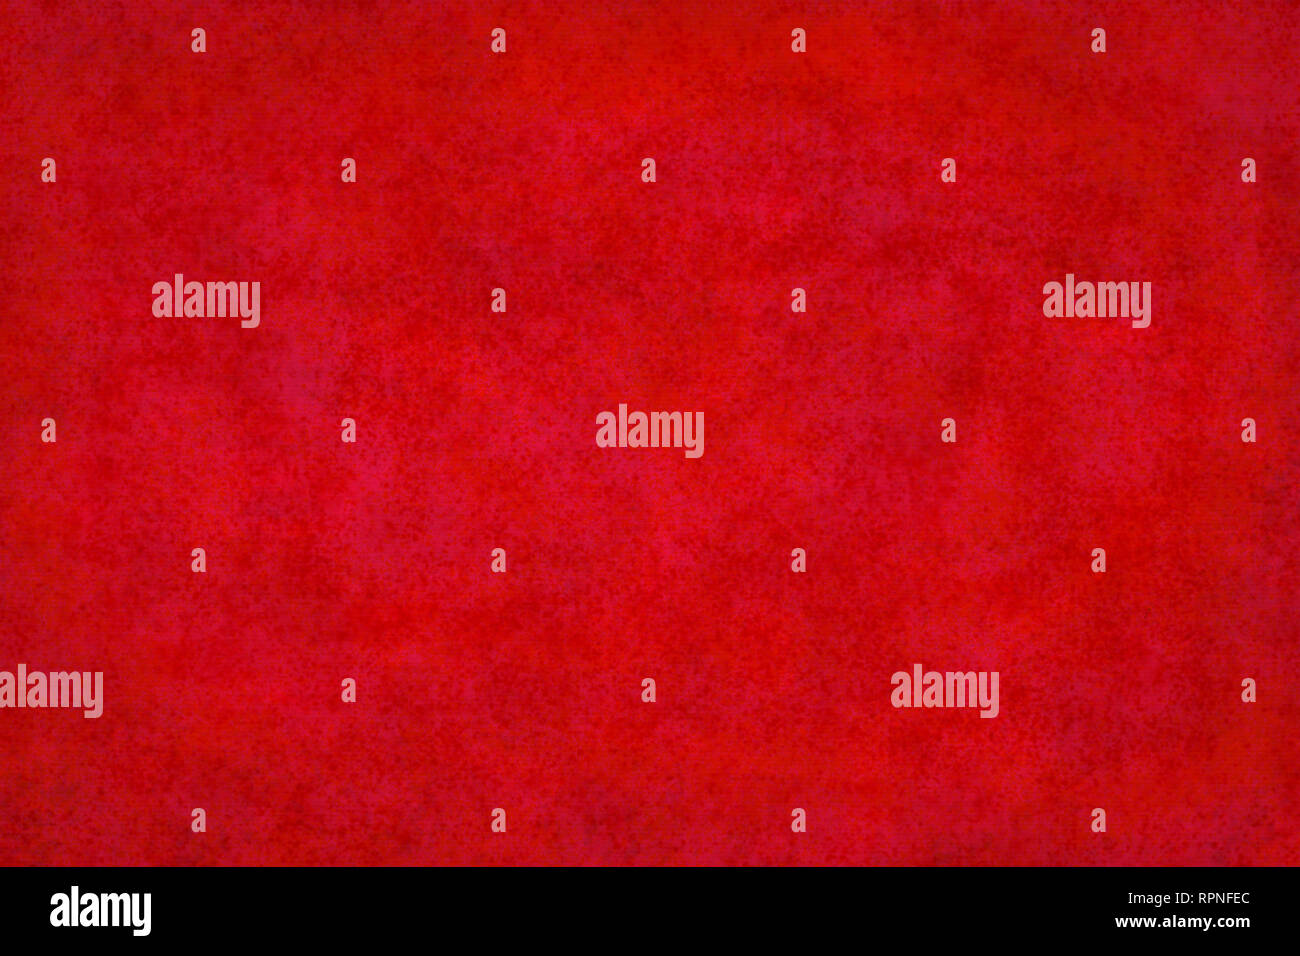 La texture du mur de fond rouge - fond de Noël Banque D'Images